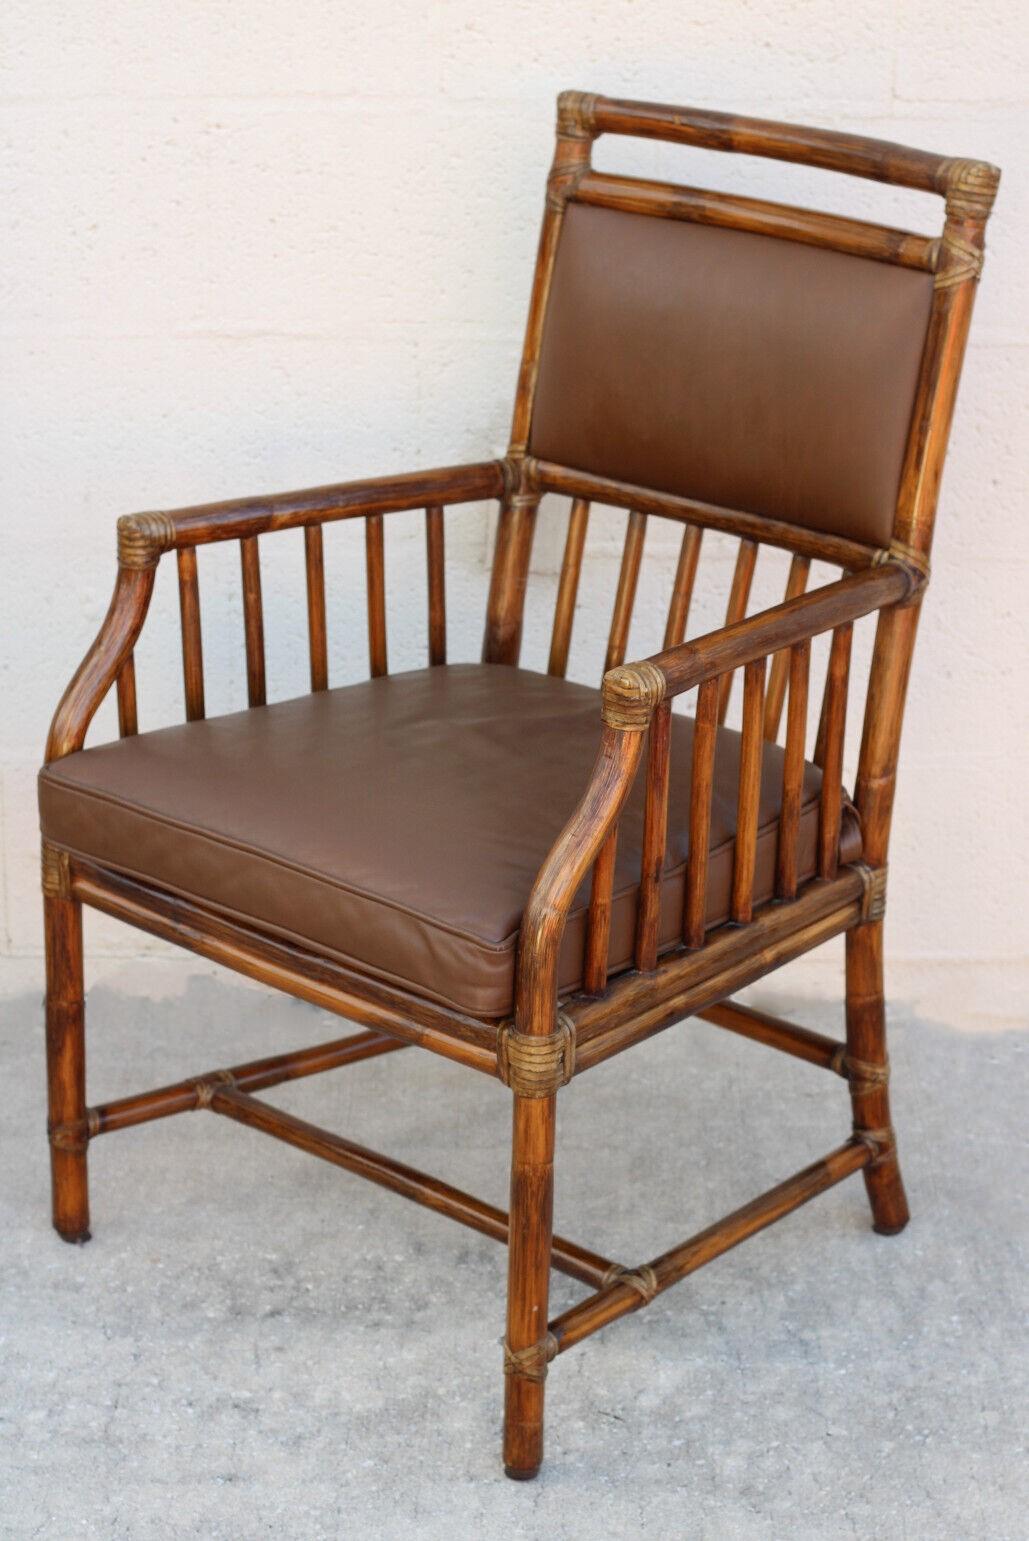 Ein Paar alte McGuire Rattan- und Ledersessel oder Esszimmerstühle mit Craftsman-Details. Die Stühle wurden von Andrew Delfino entworfen und sind in einem dunklen Tabakton gehalten. Die Rückenlehnen sind aus geschmeidigem Leder und die Sitzkissen